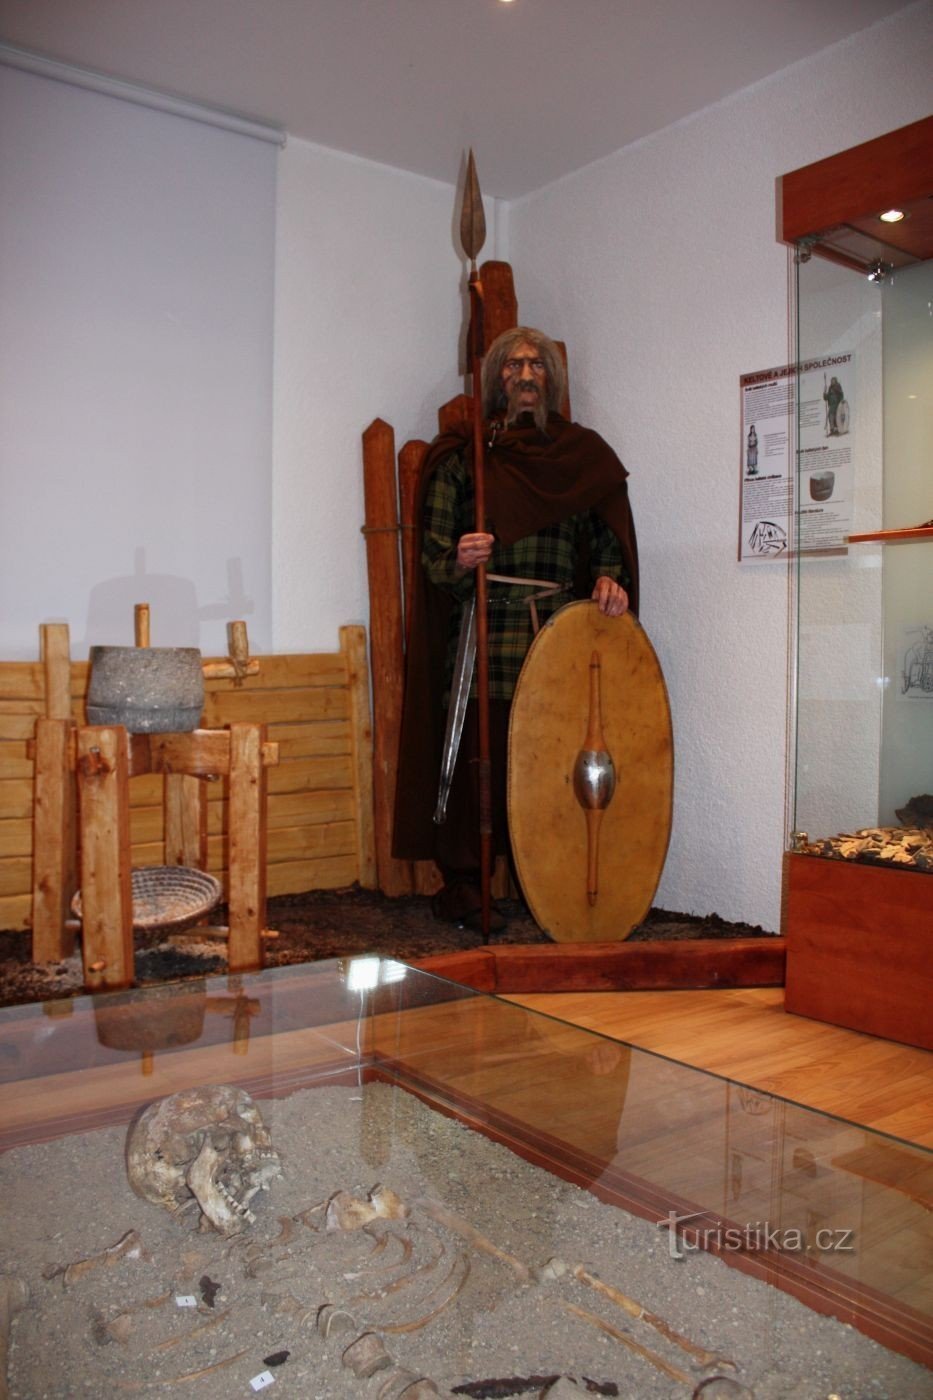 Museum van Kelten in Dobšice